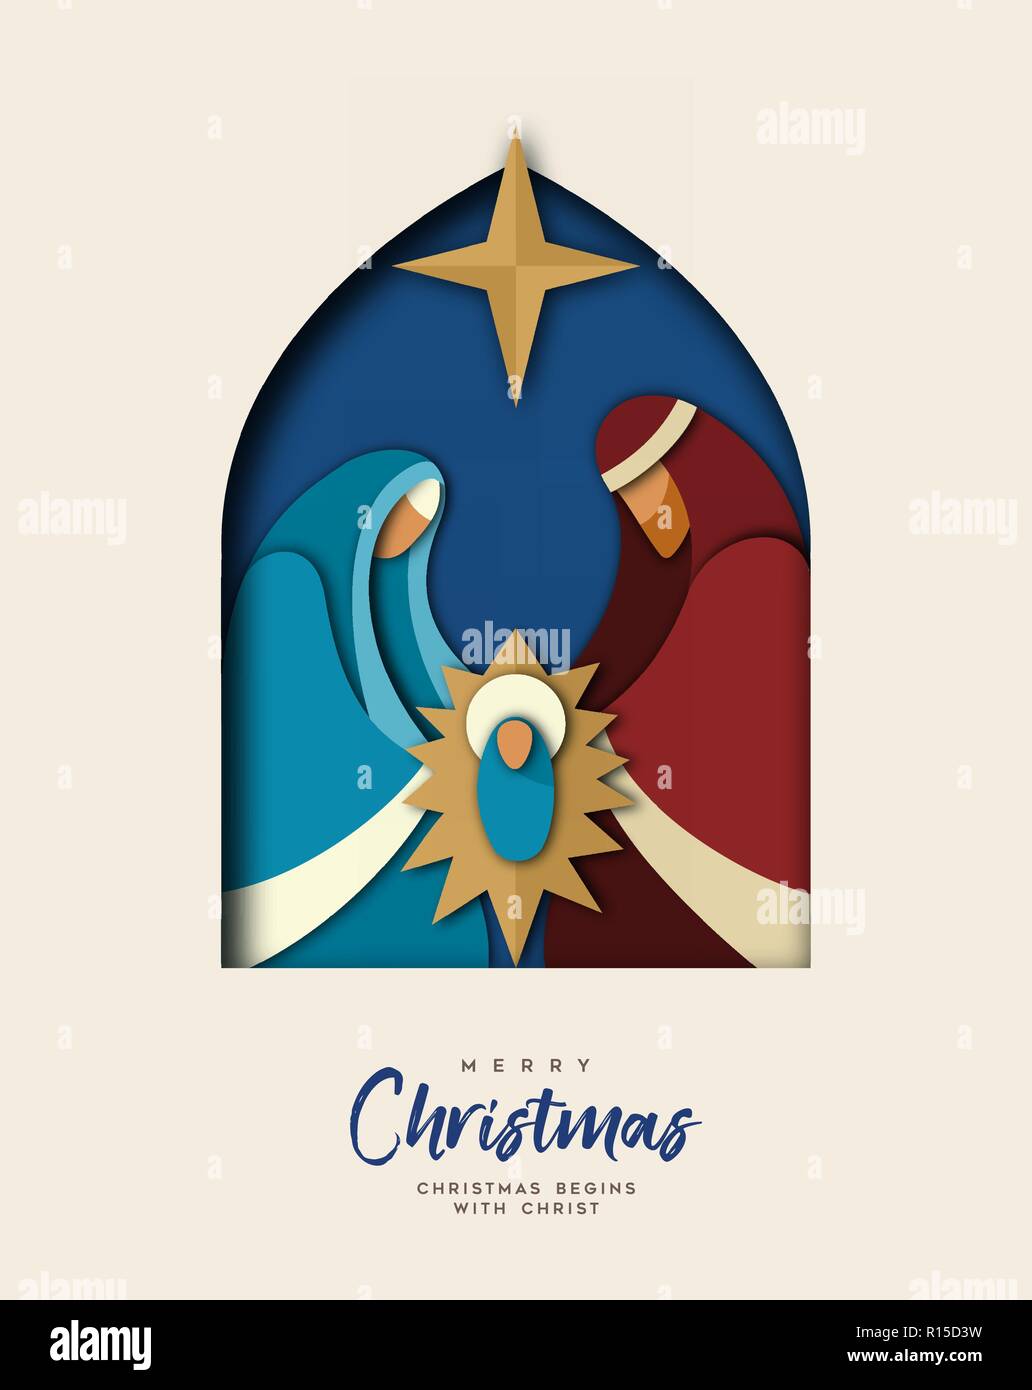 Frohe Weihnachten Grußkarte, heilige Familie Abbildung in aktueller 2-in-1-Papier schneiden Stil. Religiöser Feiertag Design von Baby Jesus Christus. Stock Vektor